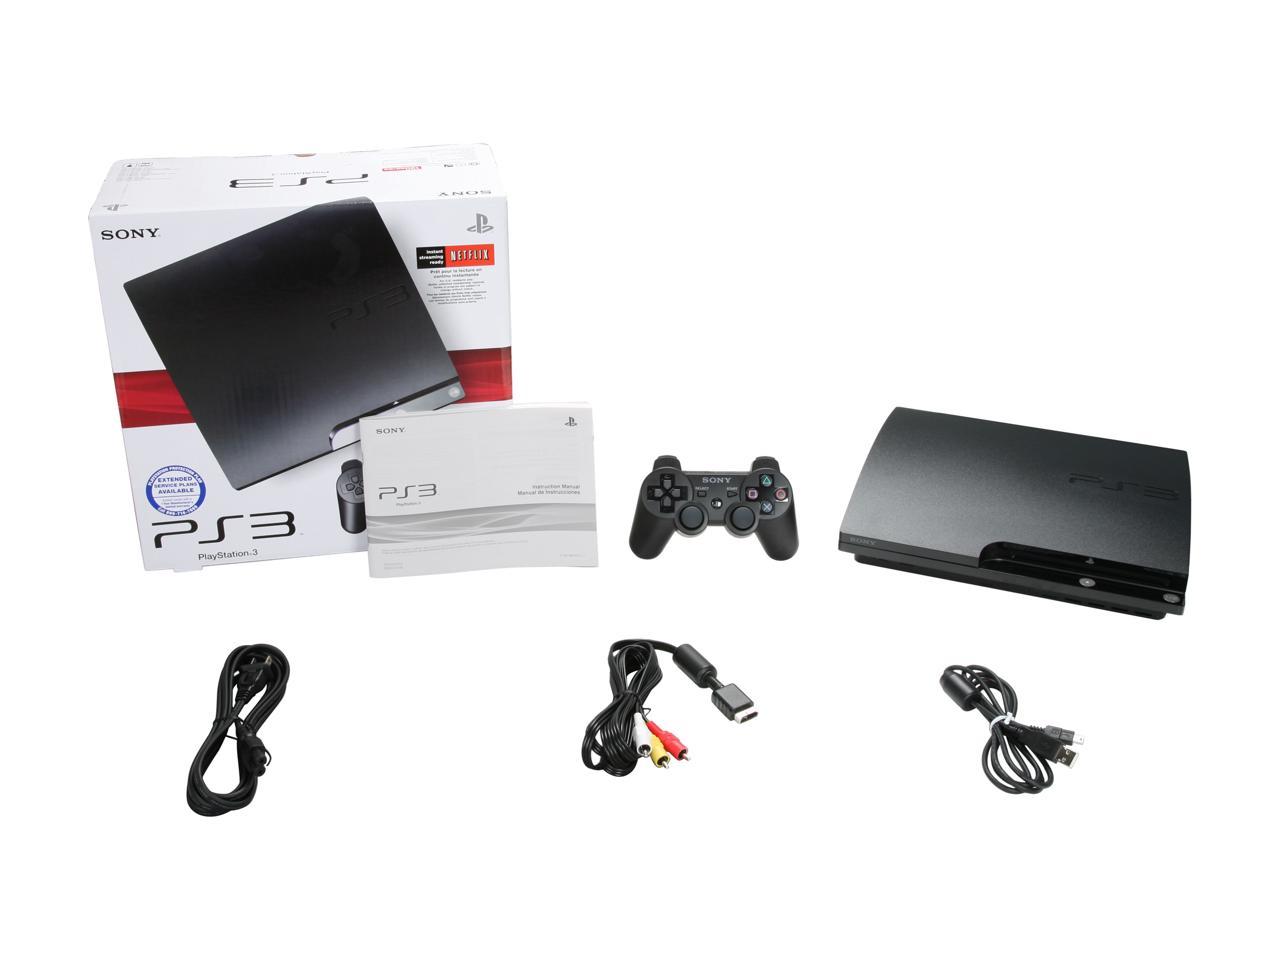  SONY Playstation 3 Console 120 GB Black - Newegg.com